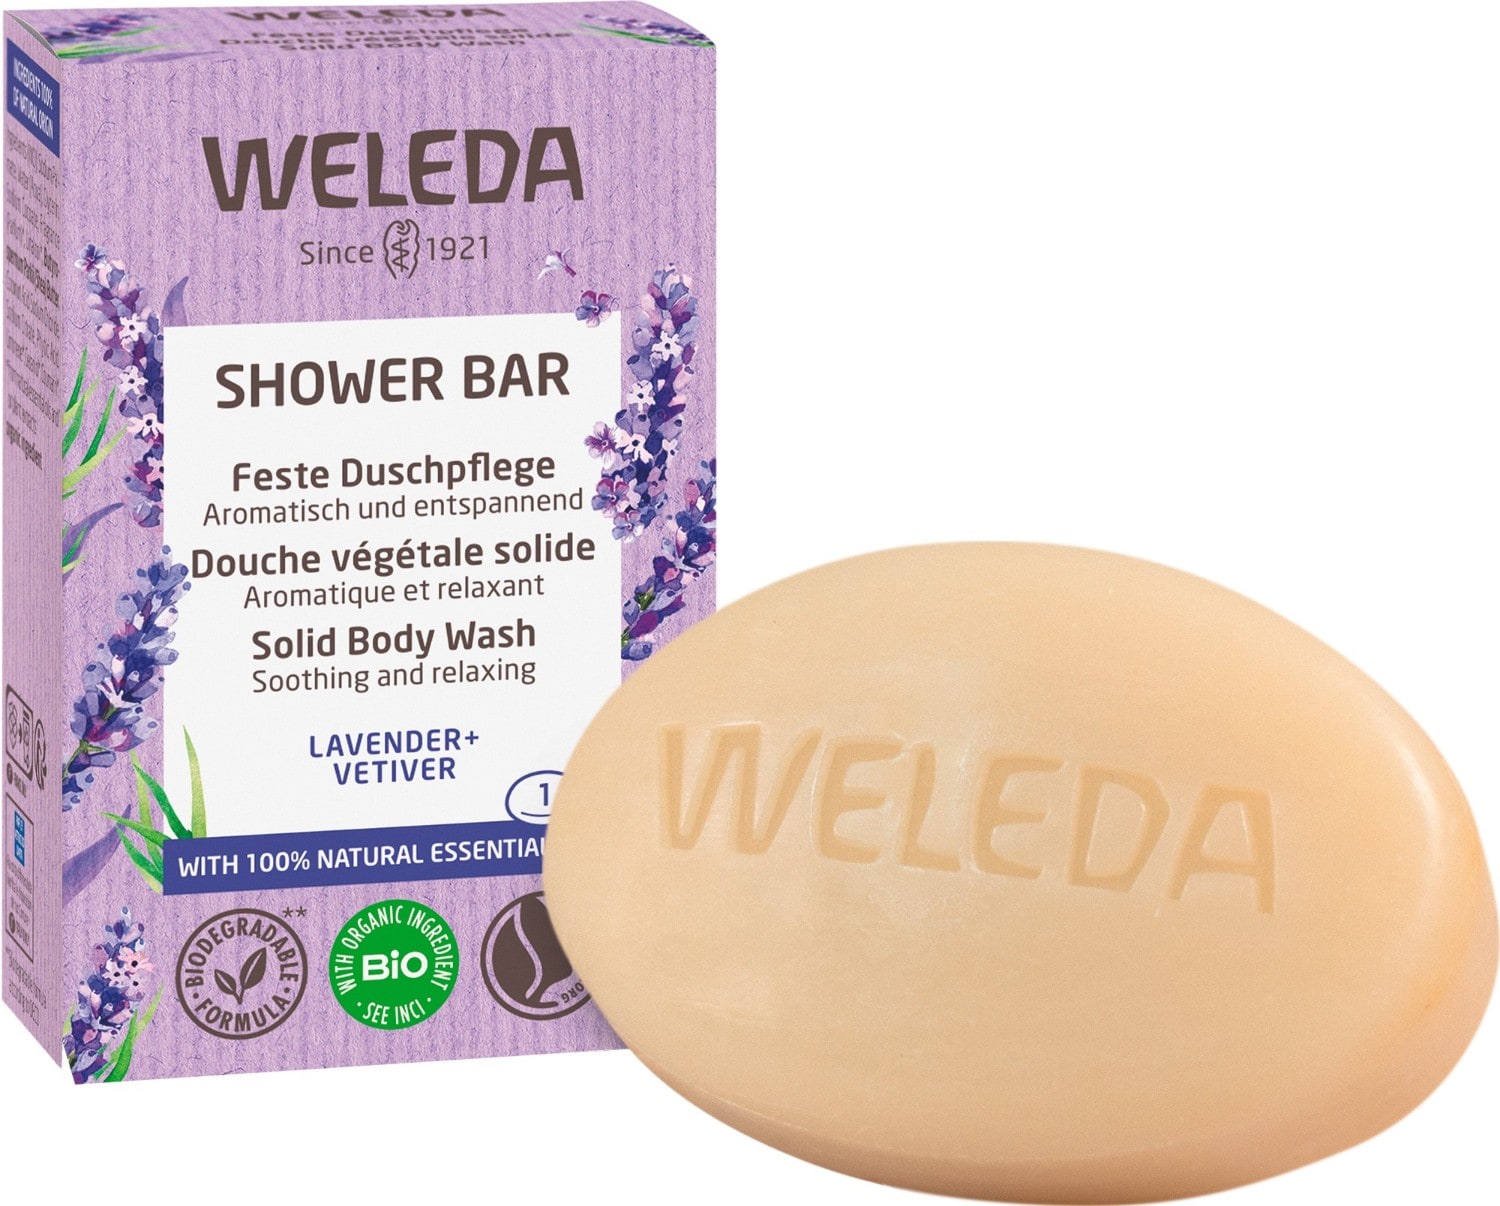 WELEDA Shower Bar - Lavender + Vetiver